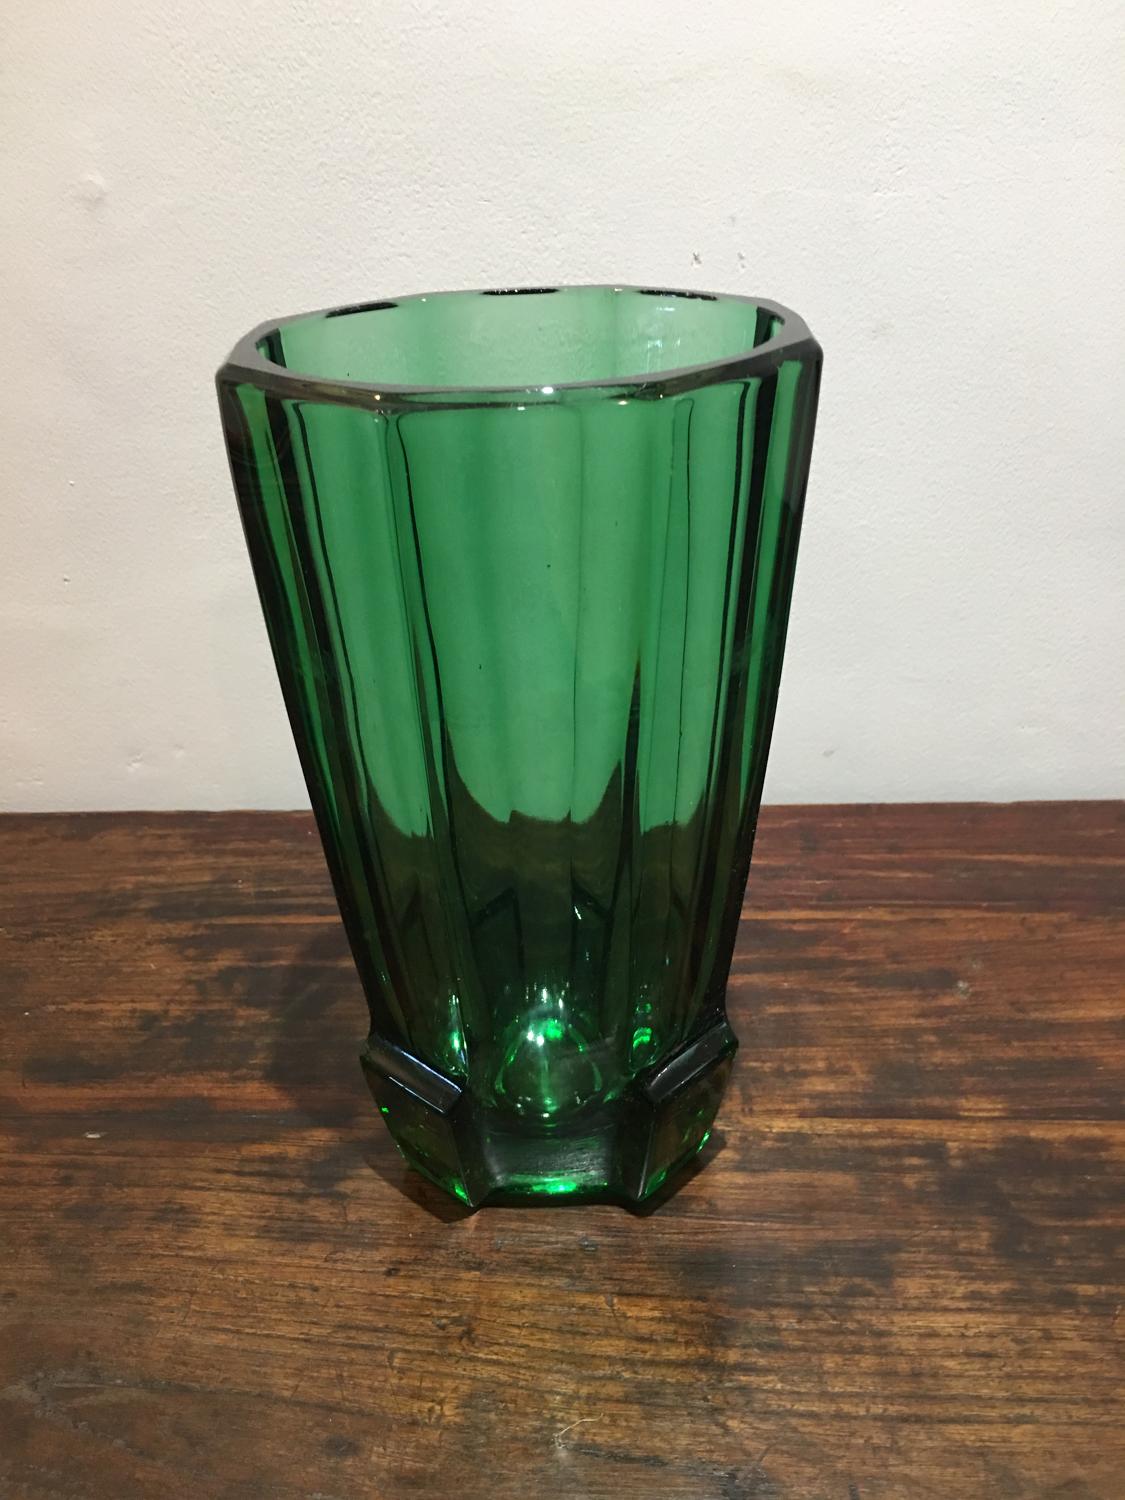 An Emerald Green Art glass vase